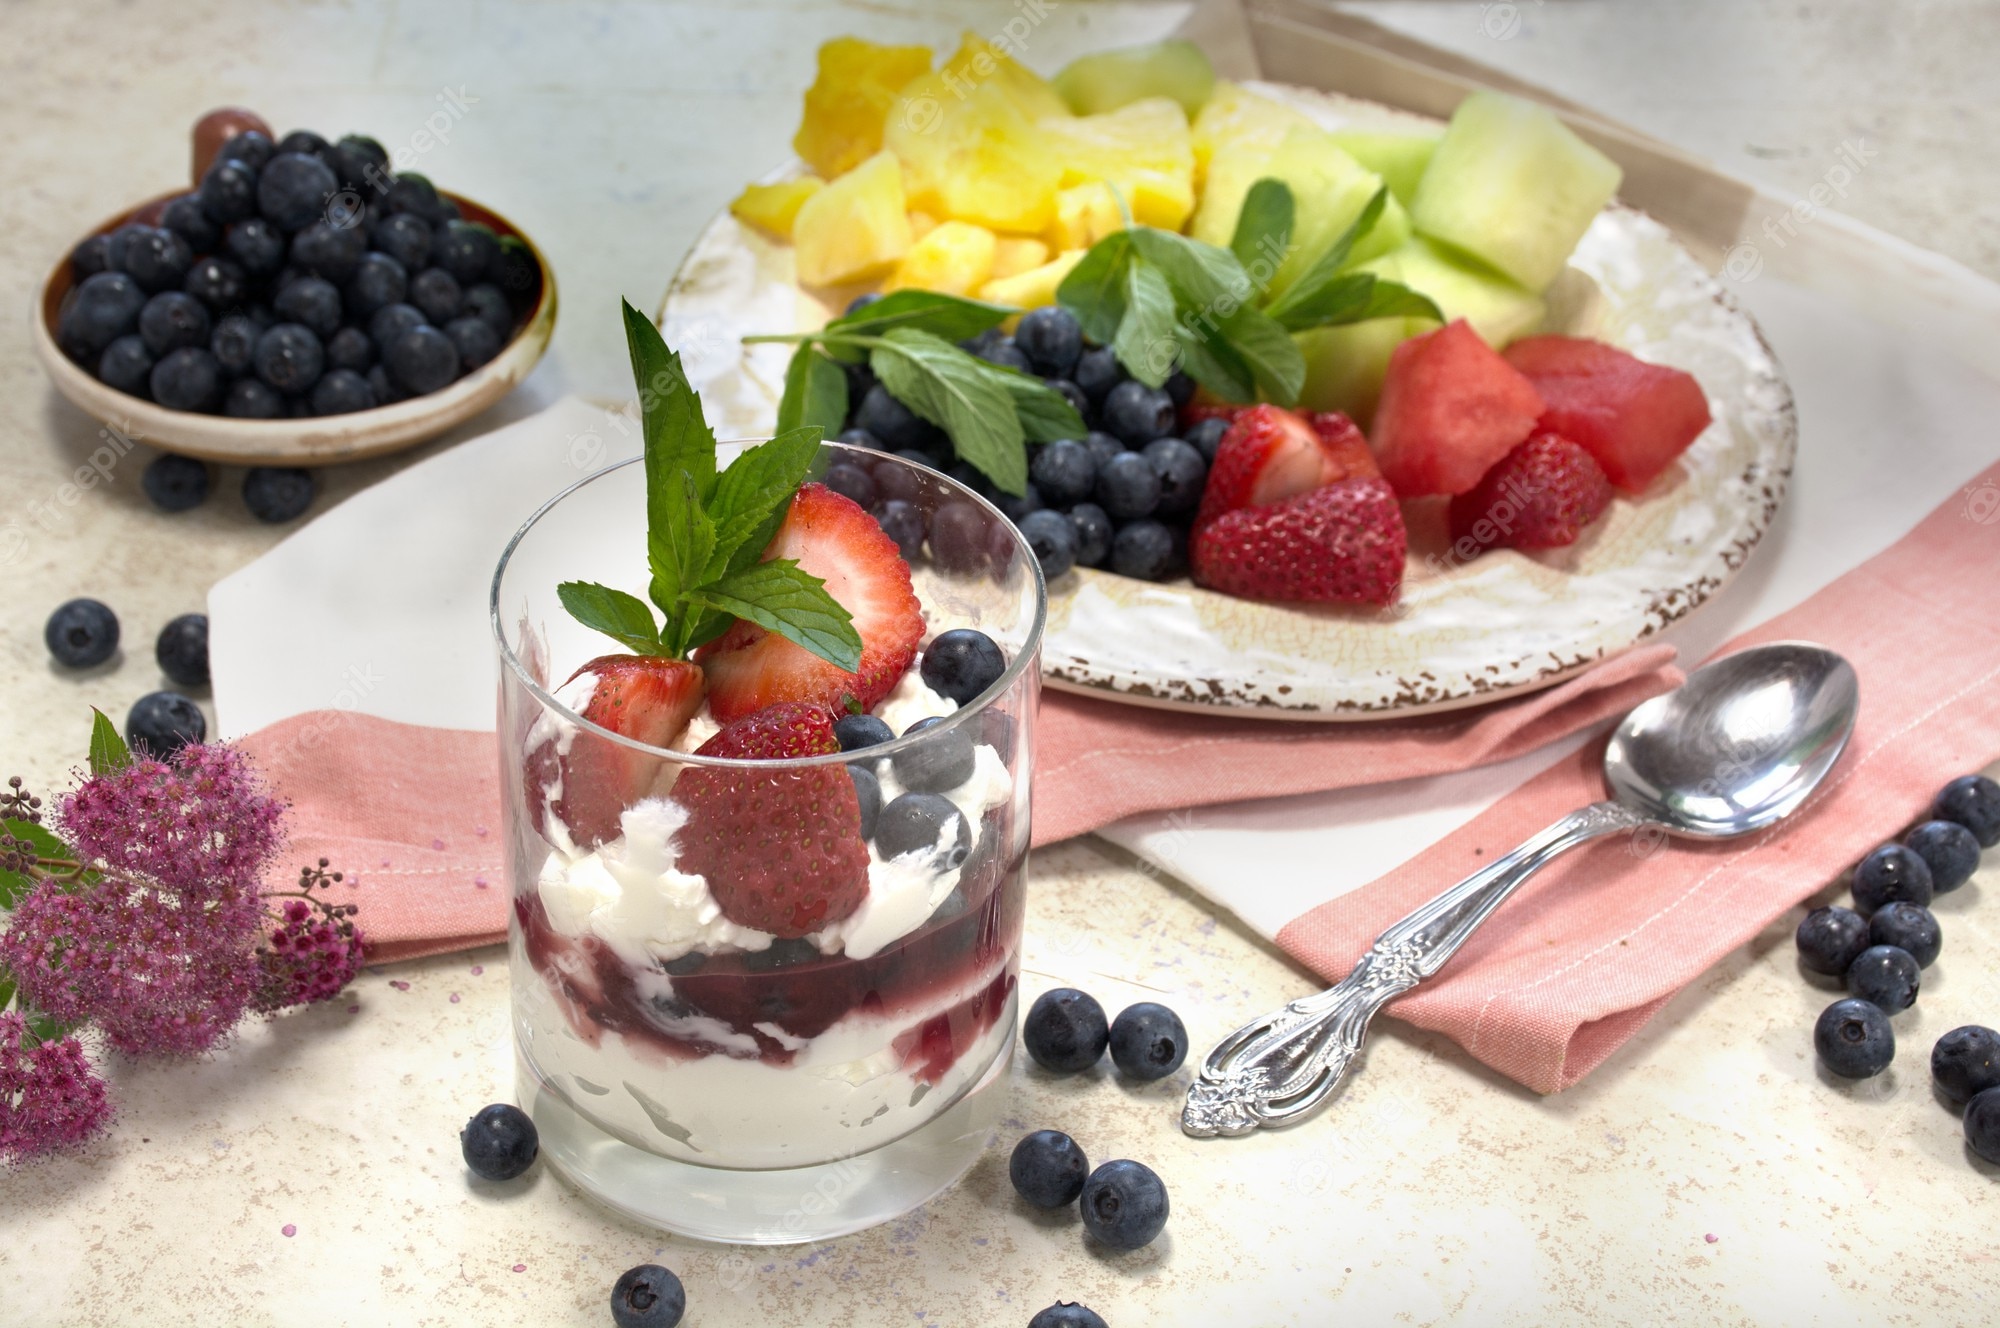 fruit salad yogurt with fresh berries breakfast healthy eating healthy lifestyle 372986 373